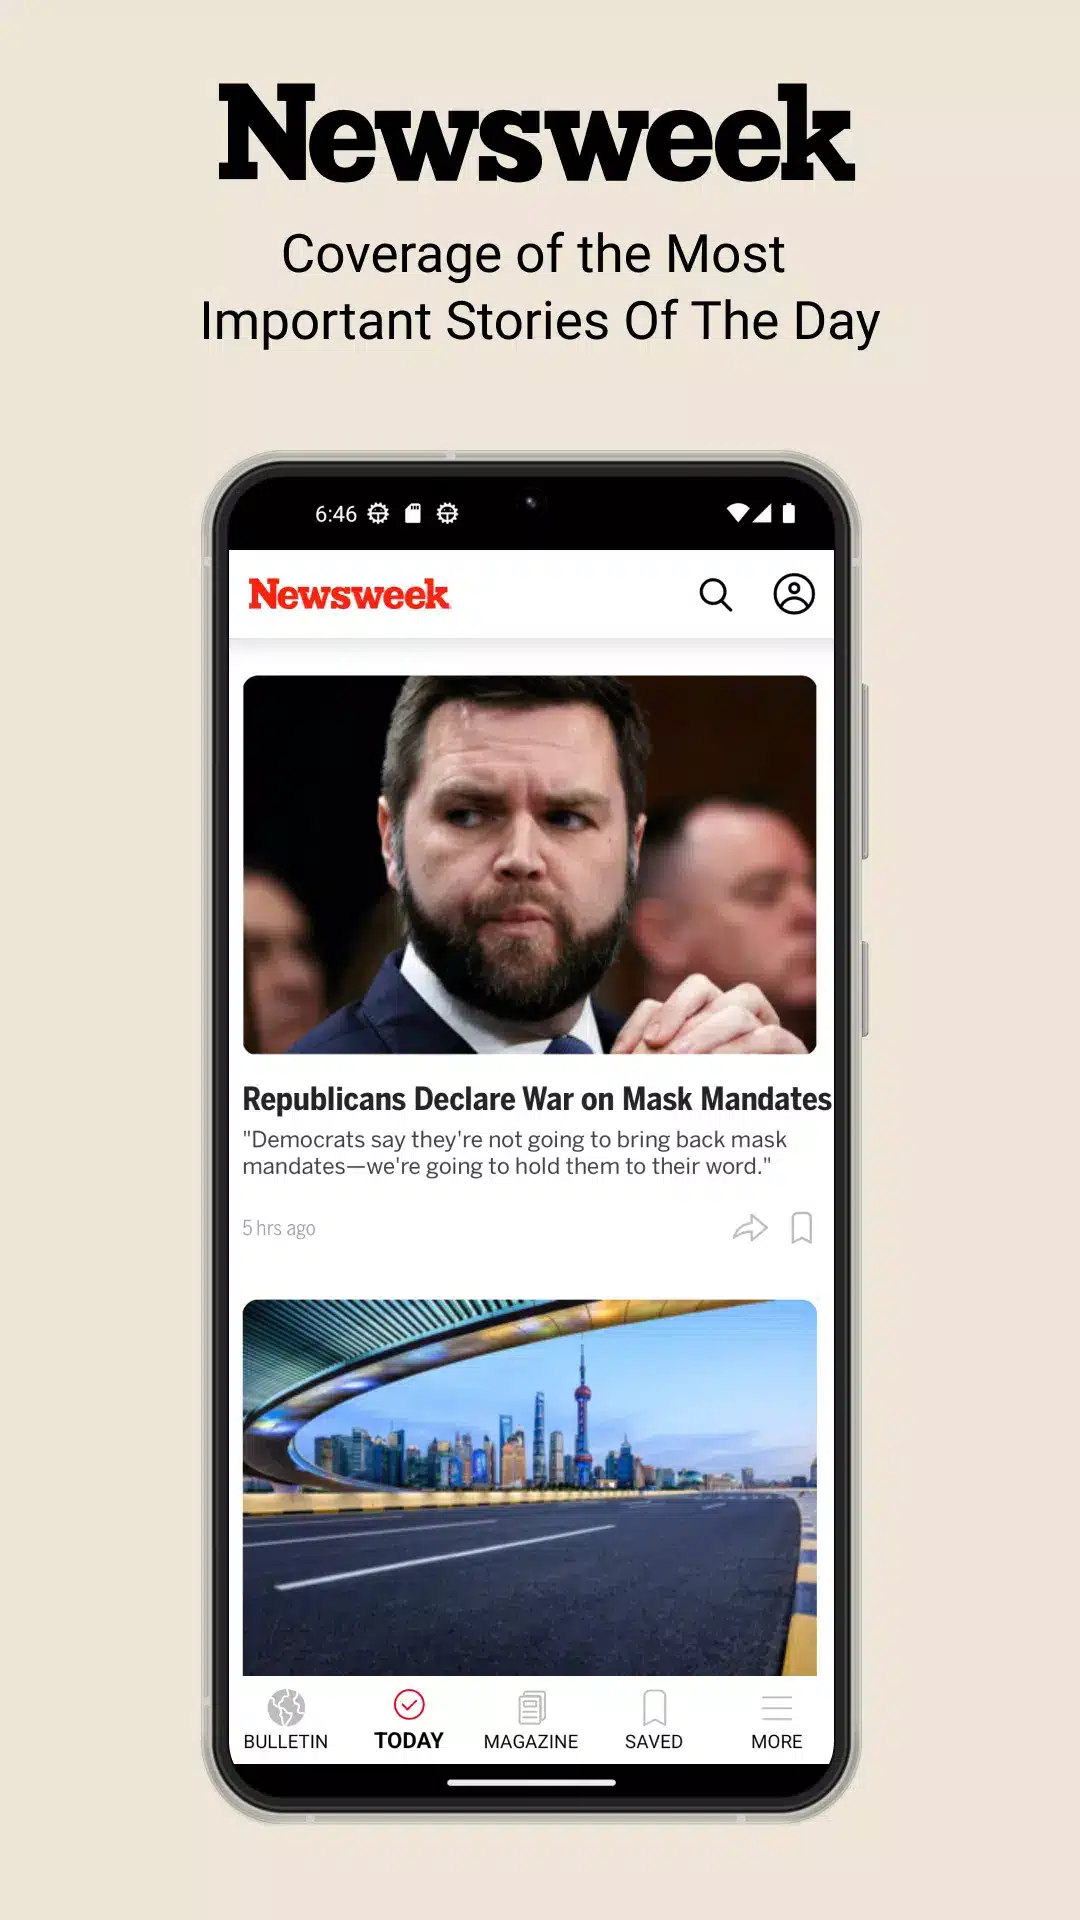 Newsweek Image 1